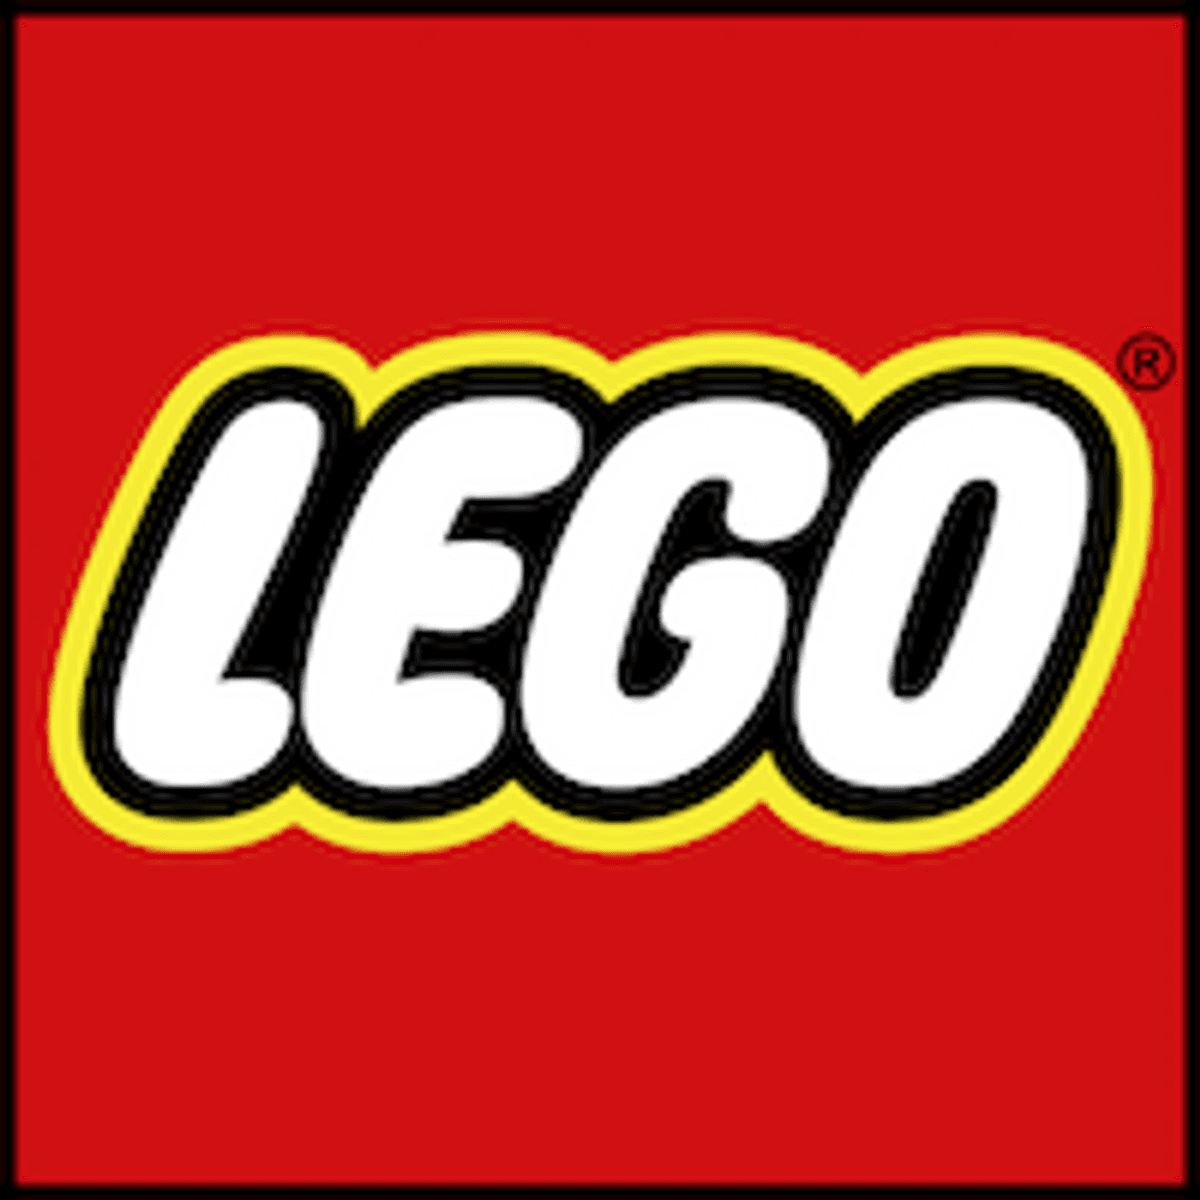 Lego komt met TikTok-alternatief image